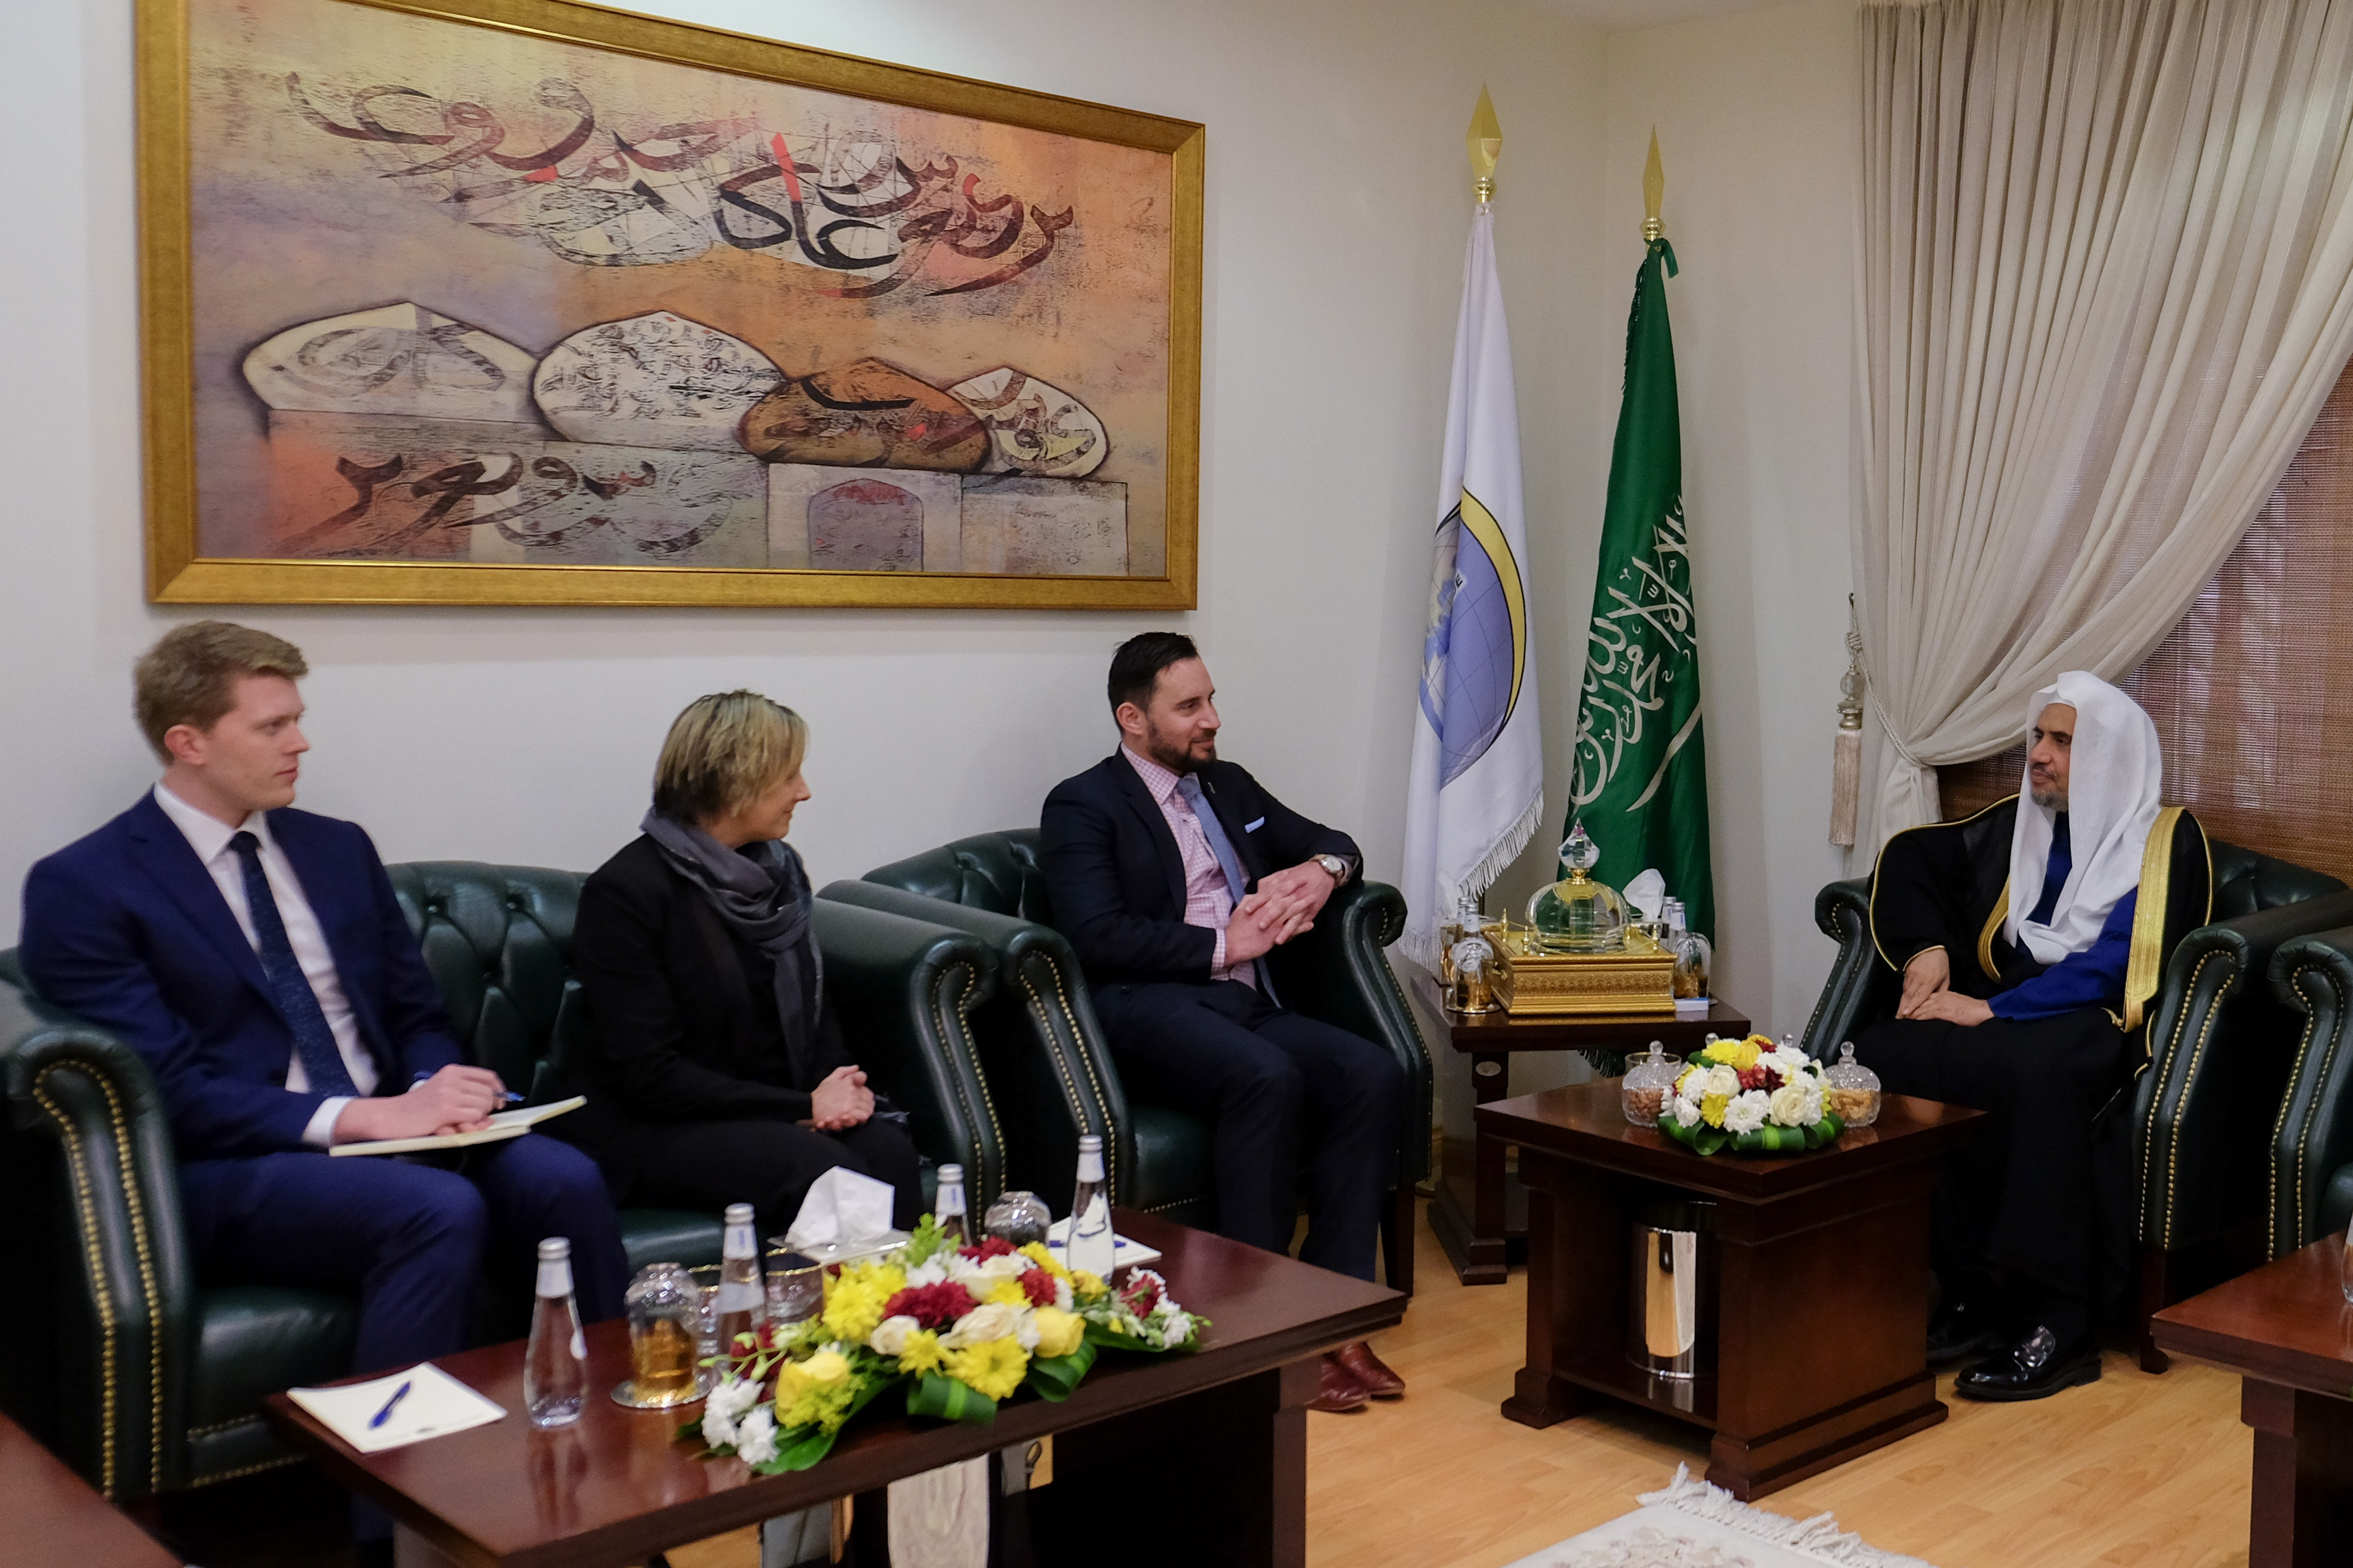 عزت مآب شیخ ڈاکٹر محمد العیسی نے آج مملکت سعودی عرب میں متعین نیوزی لینڈ کے سفیر  جیمز مونرو  سے ملاقات کی